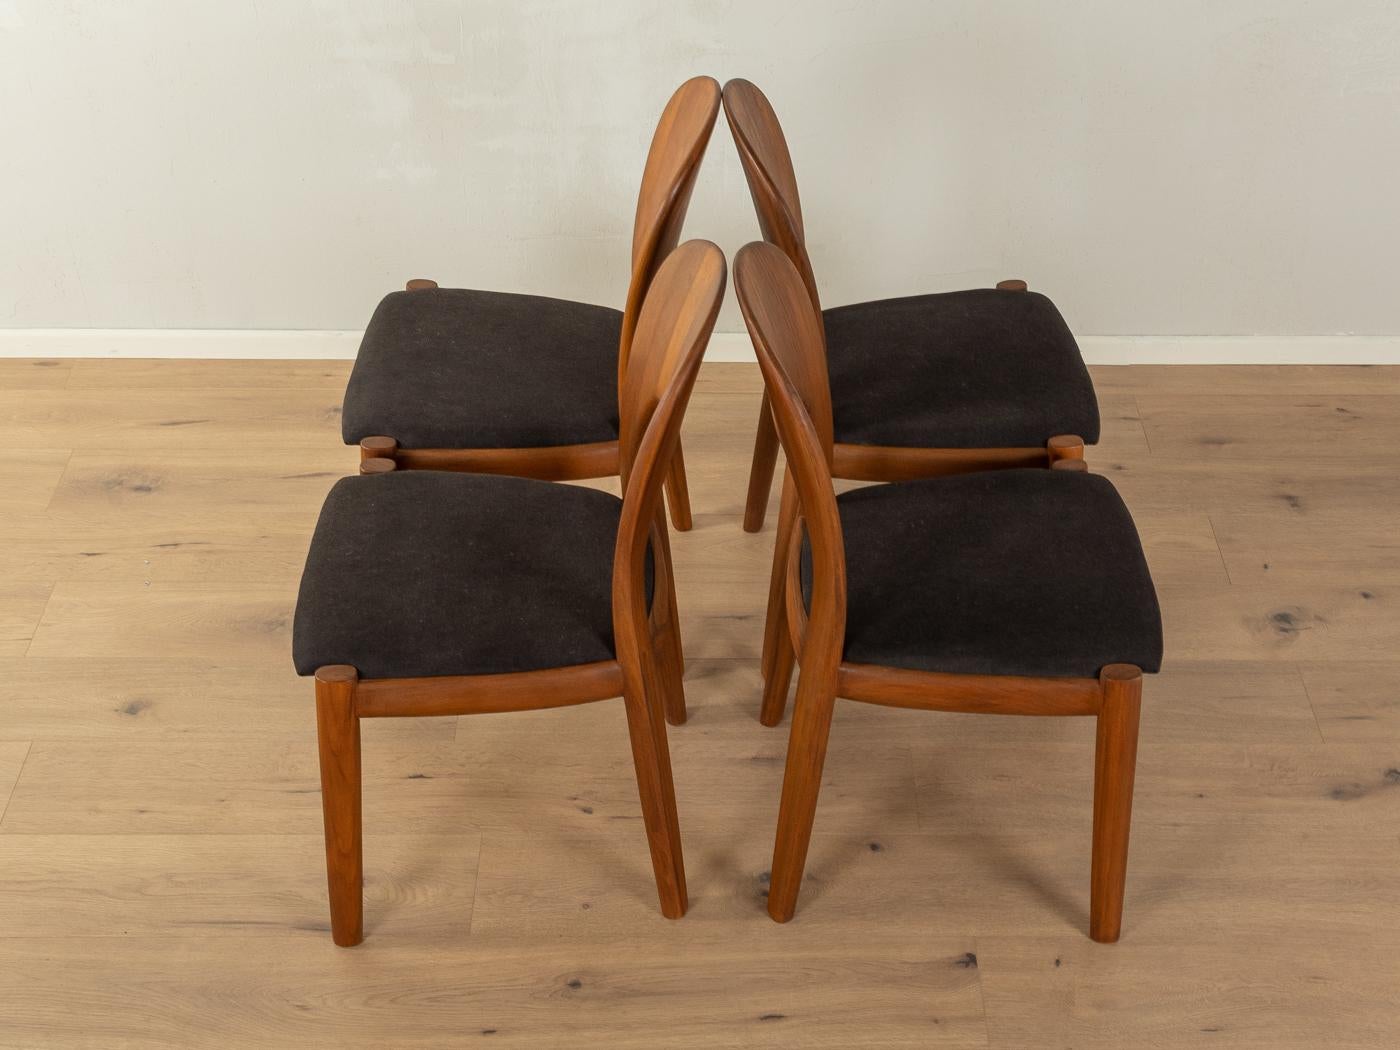 Klassische Esszimmerstühle aus den 1960er Jahren von Niels Koefoed für Koefoed's Hornslet. Massiver Rahmen aus Teakholz. Die Stühle wurden neu gepolstert und mit einem hochwertigen Polsterstoff in Schwarz bezogen. Das Angebot umfasst vier